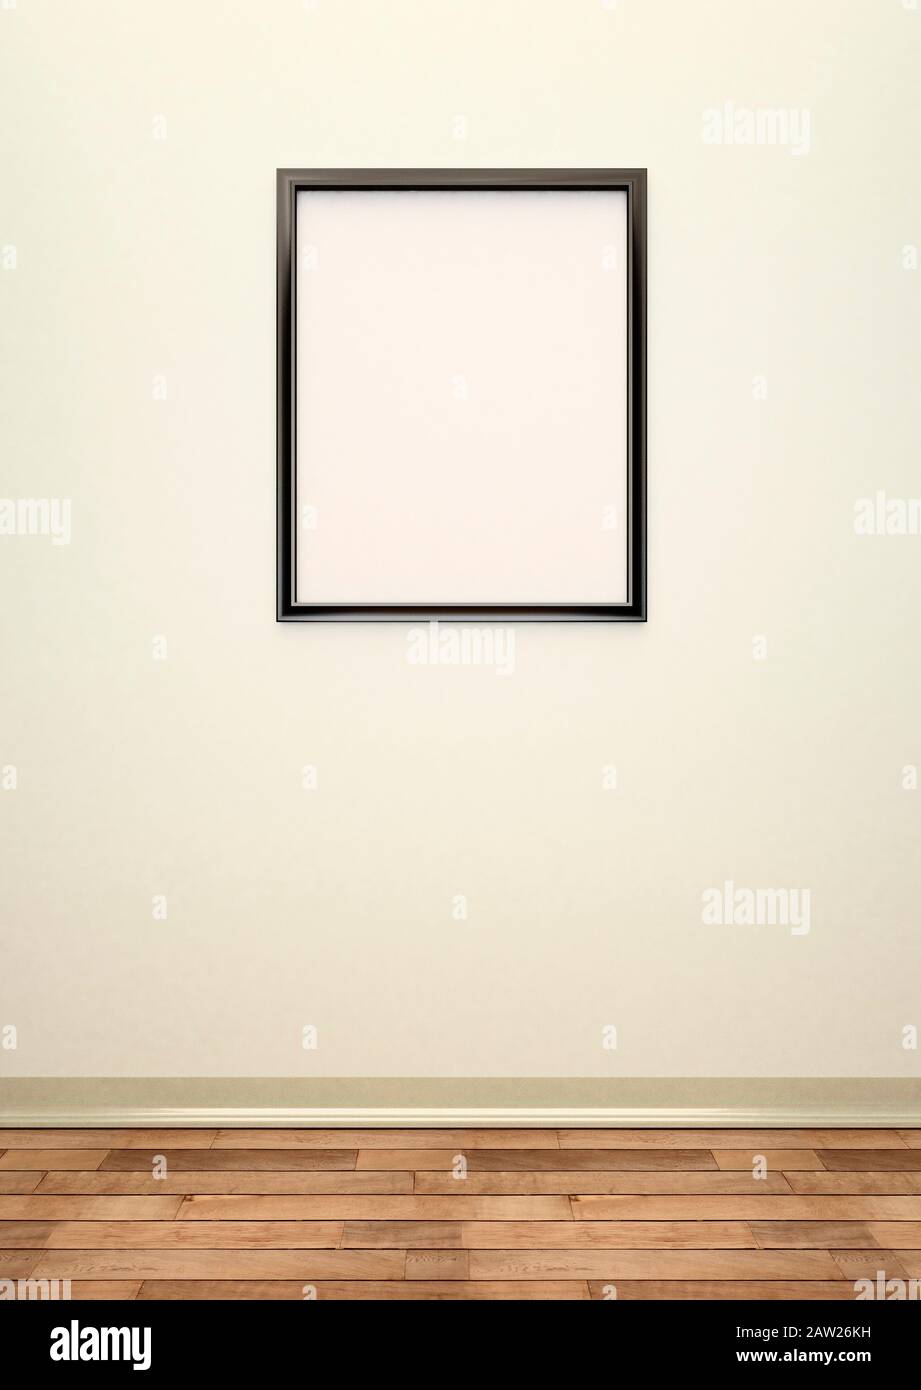 Marco de imagen grande en blanco negro en una pared de color crema Foto de stock